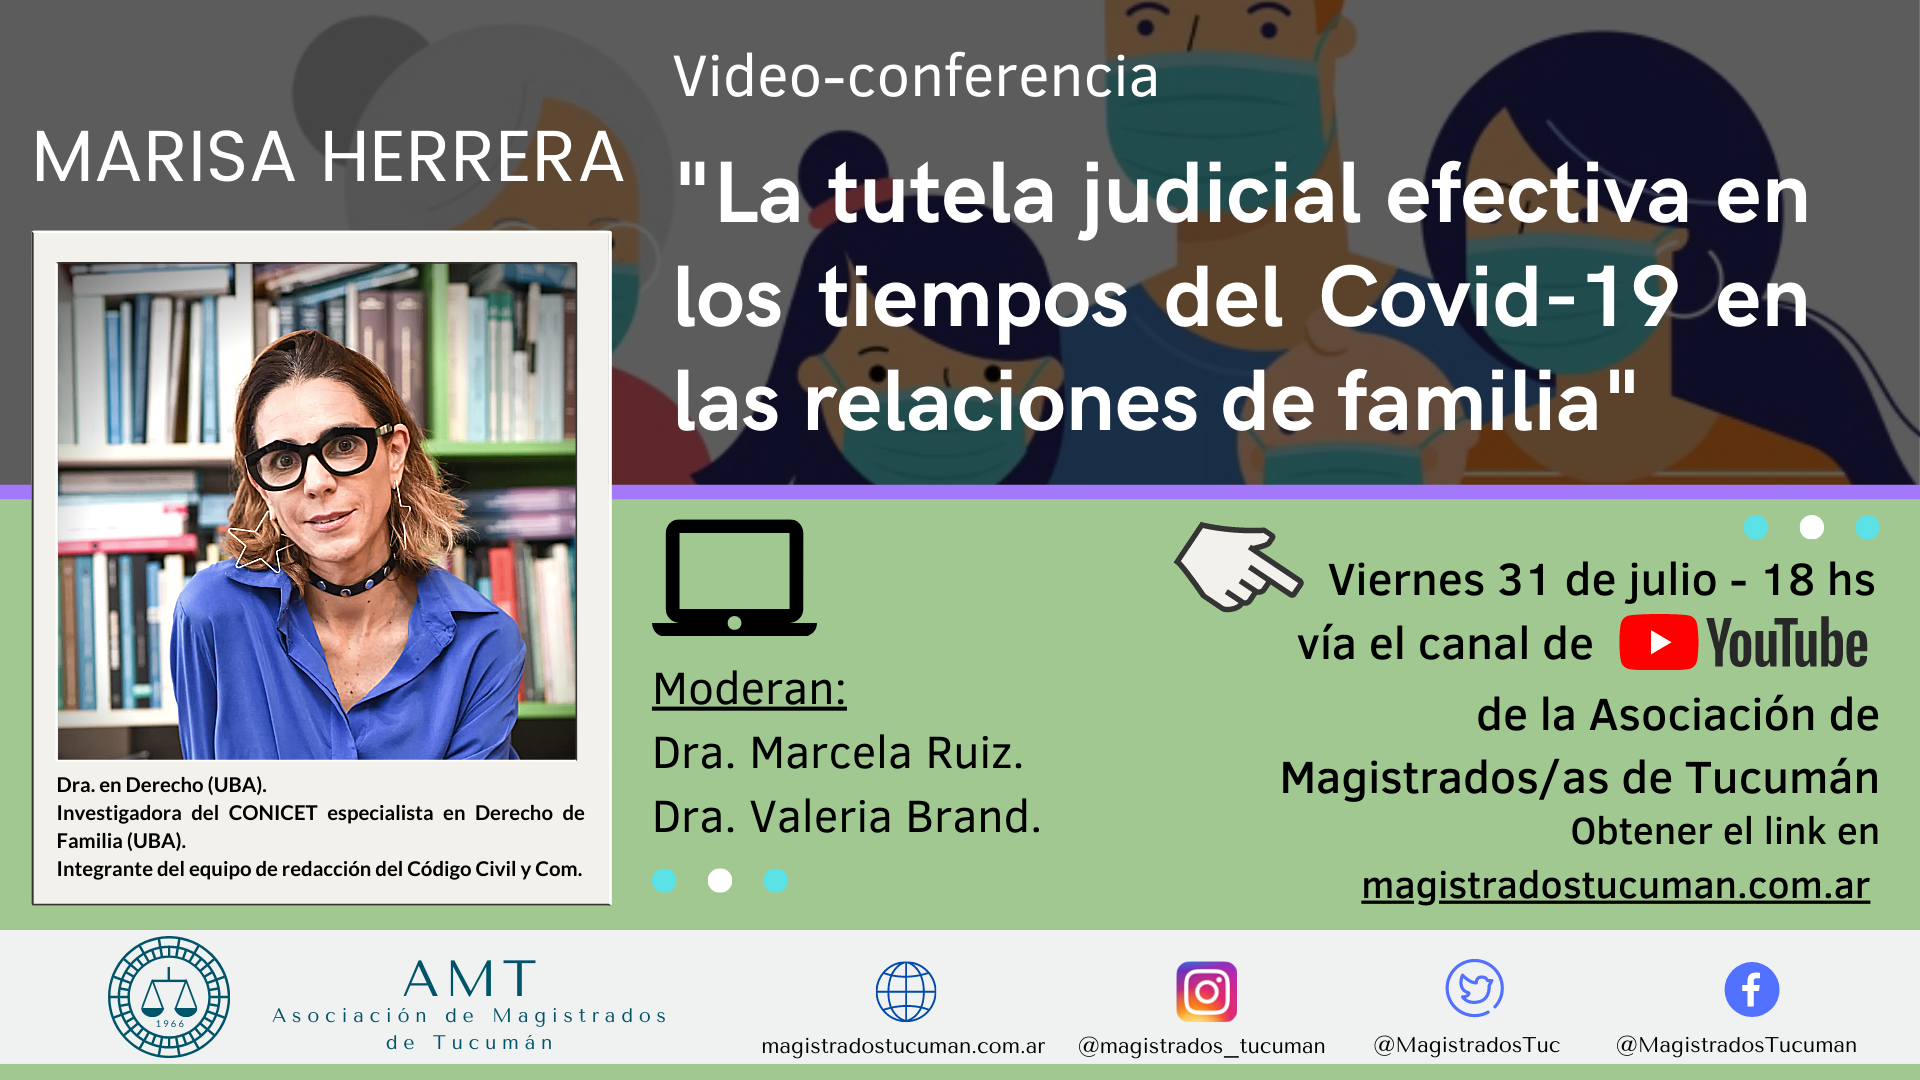 Vuelva a ver la conferencia de Marisa Herrera «La tutela judicial efectiva en los tiempos del Covid-19 en las relaciones de familia»